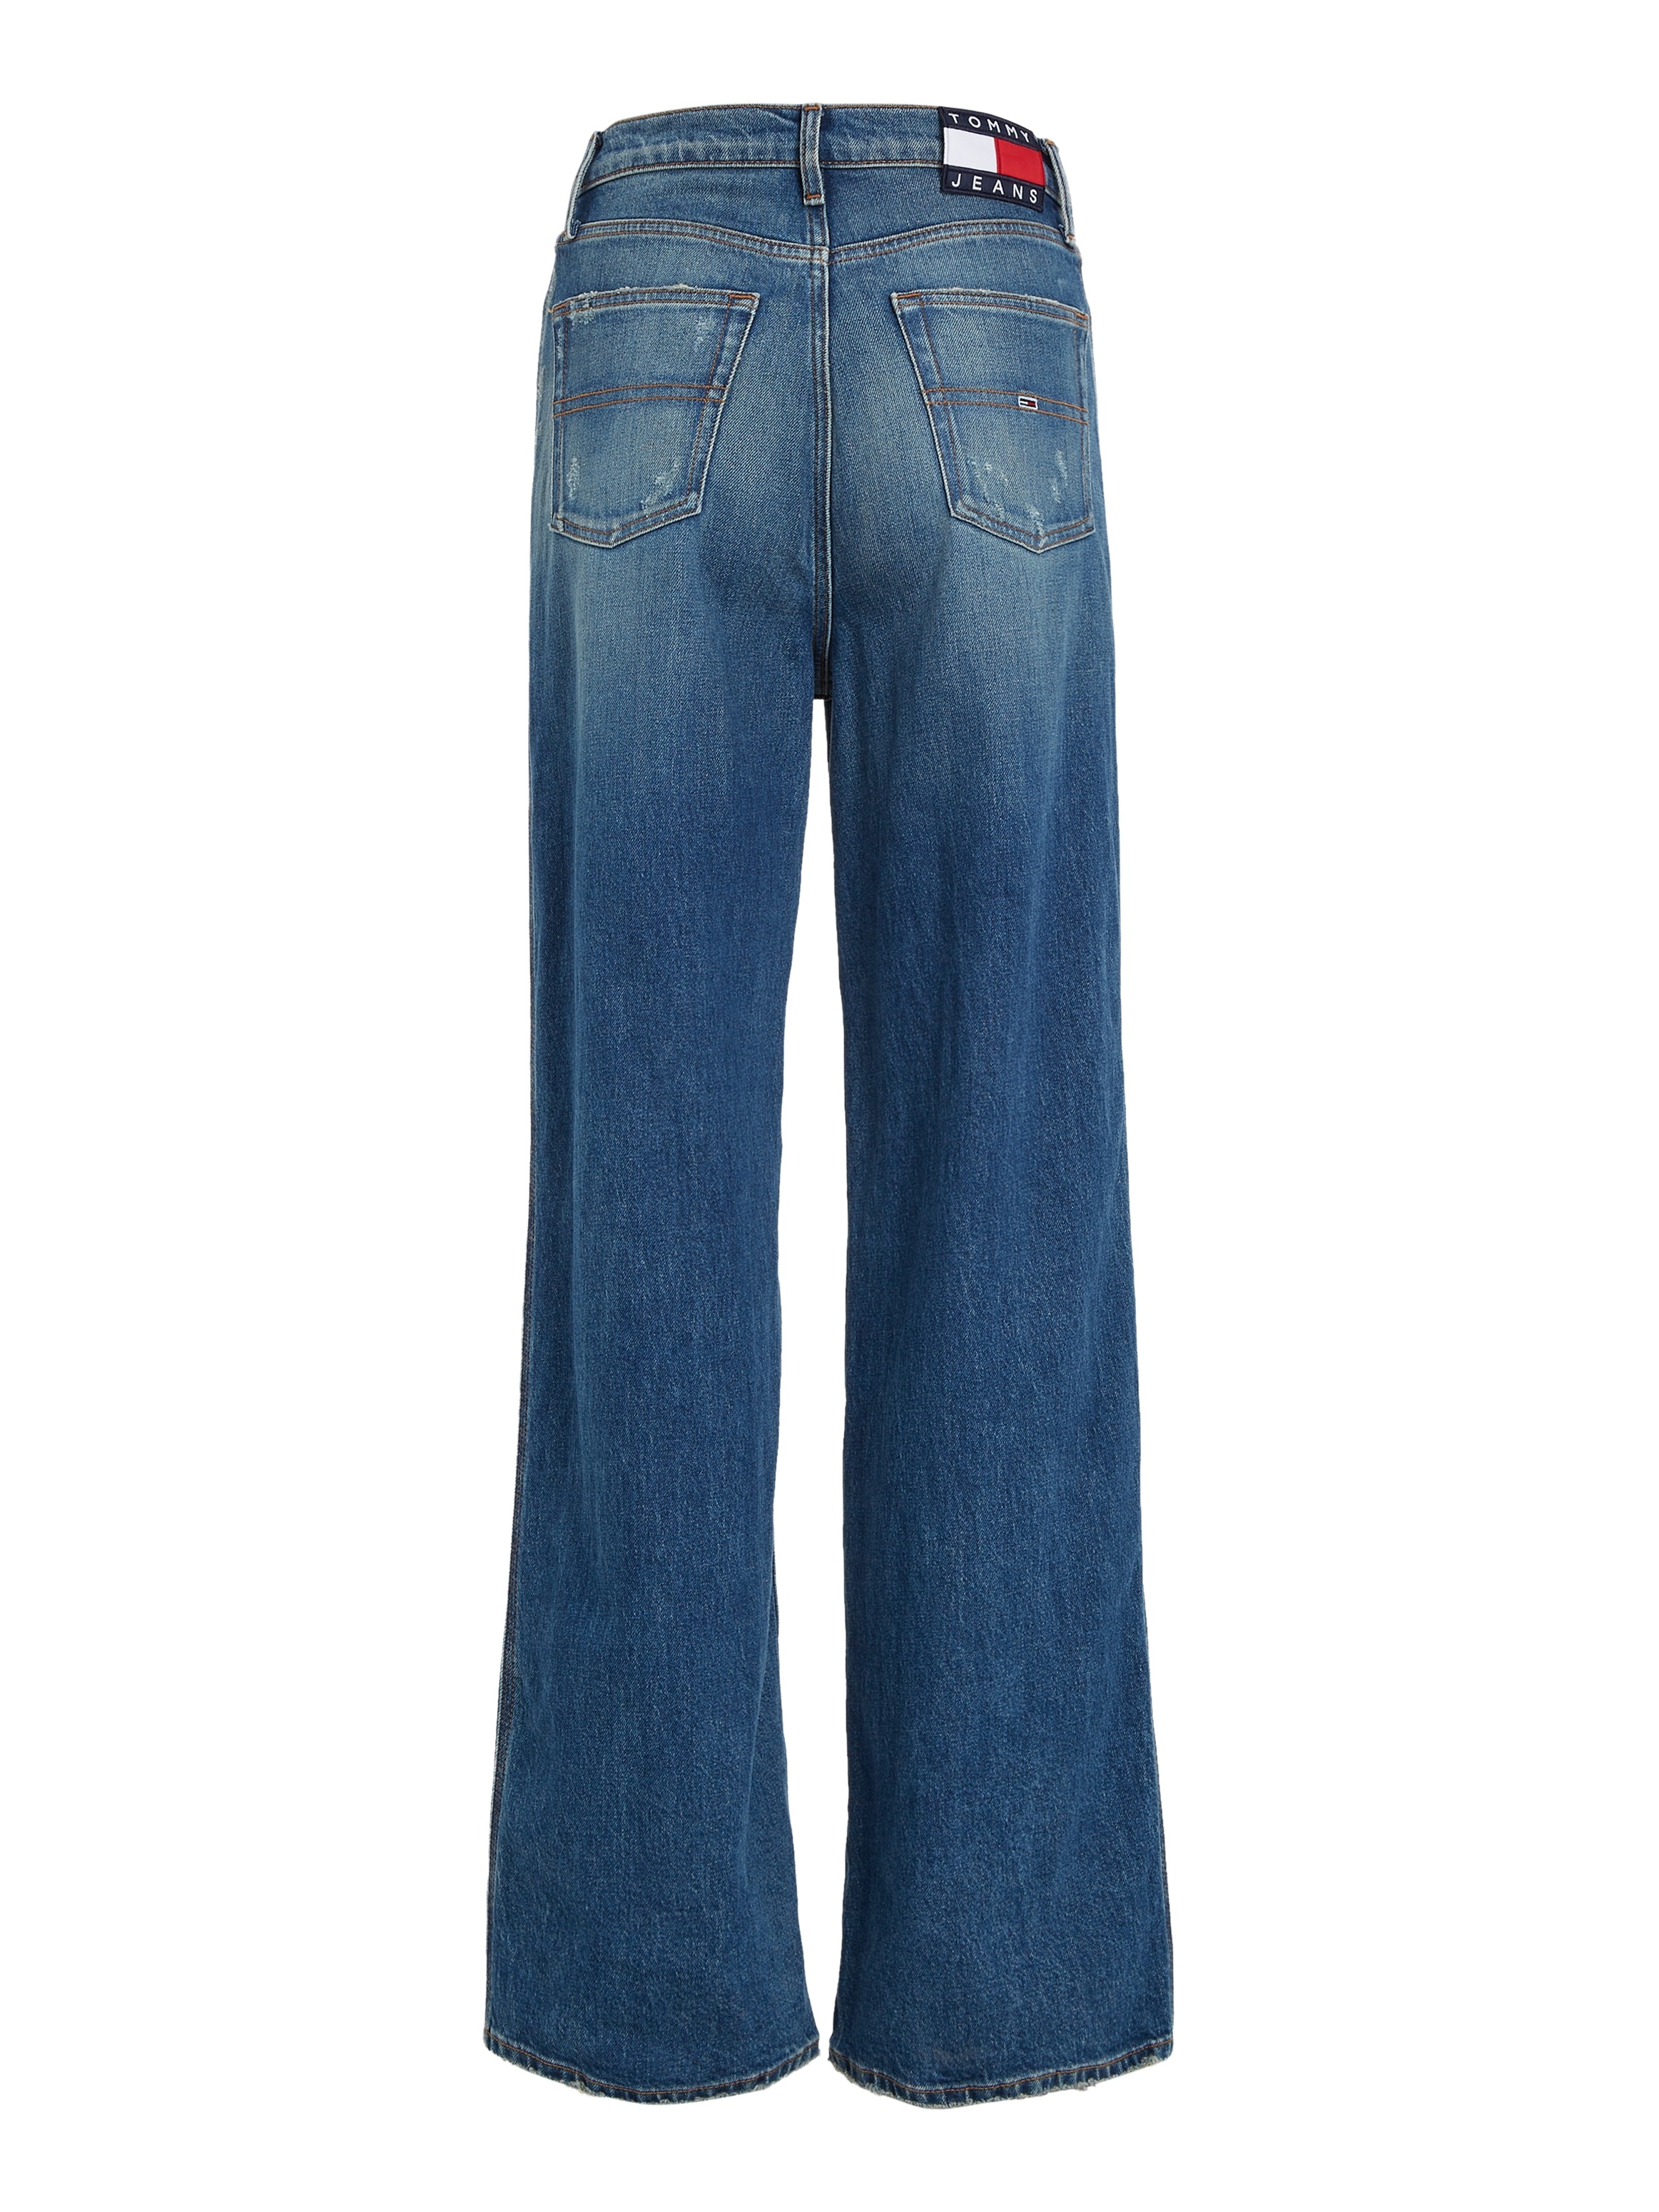 Tommy Jeans Weite Jeans, mit Tommy Jeans Logobadges für kaufen | BAUR